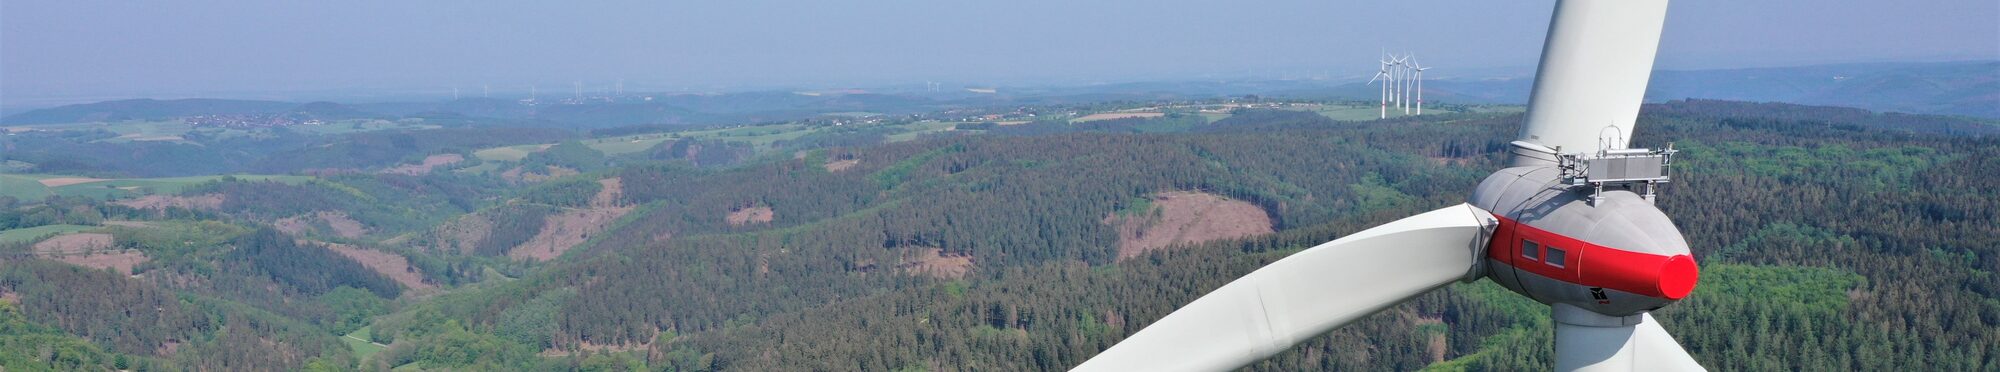 Windräder im Wald, Luftaufnahme